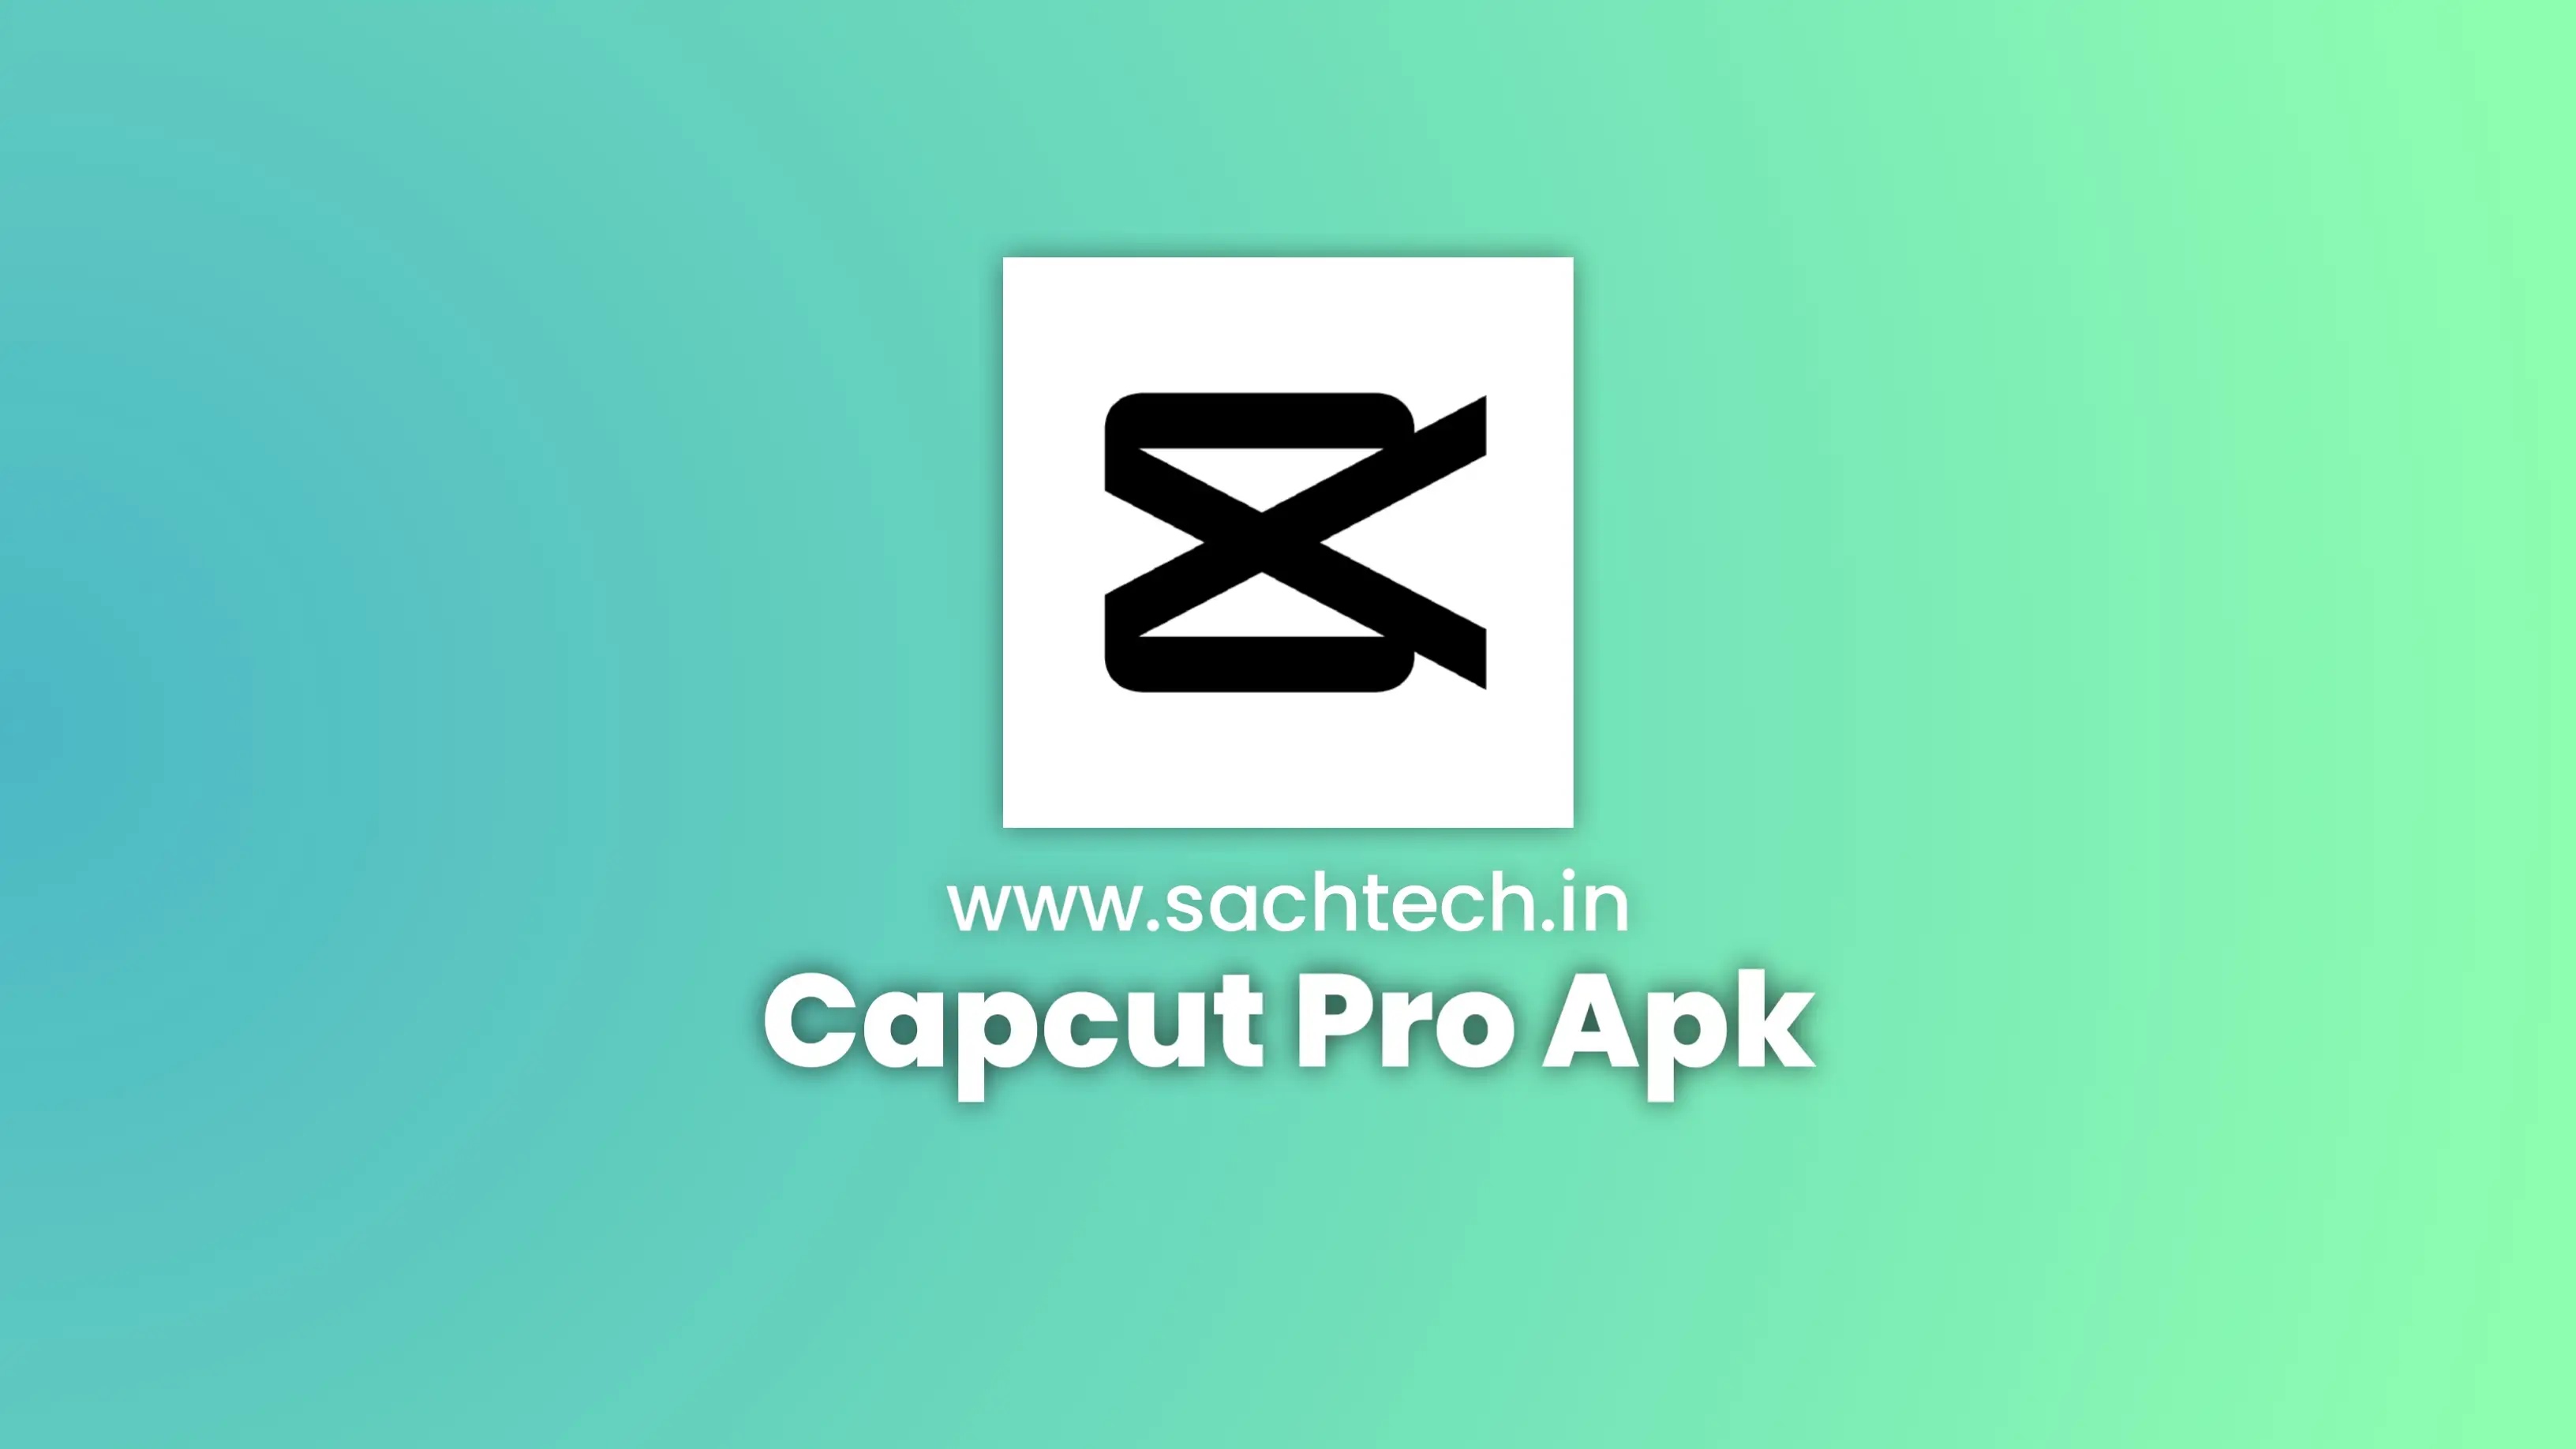 CapCut Pro Apk Latest Version - Sach Tech